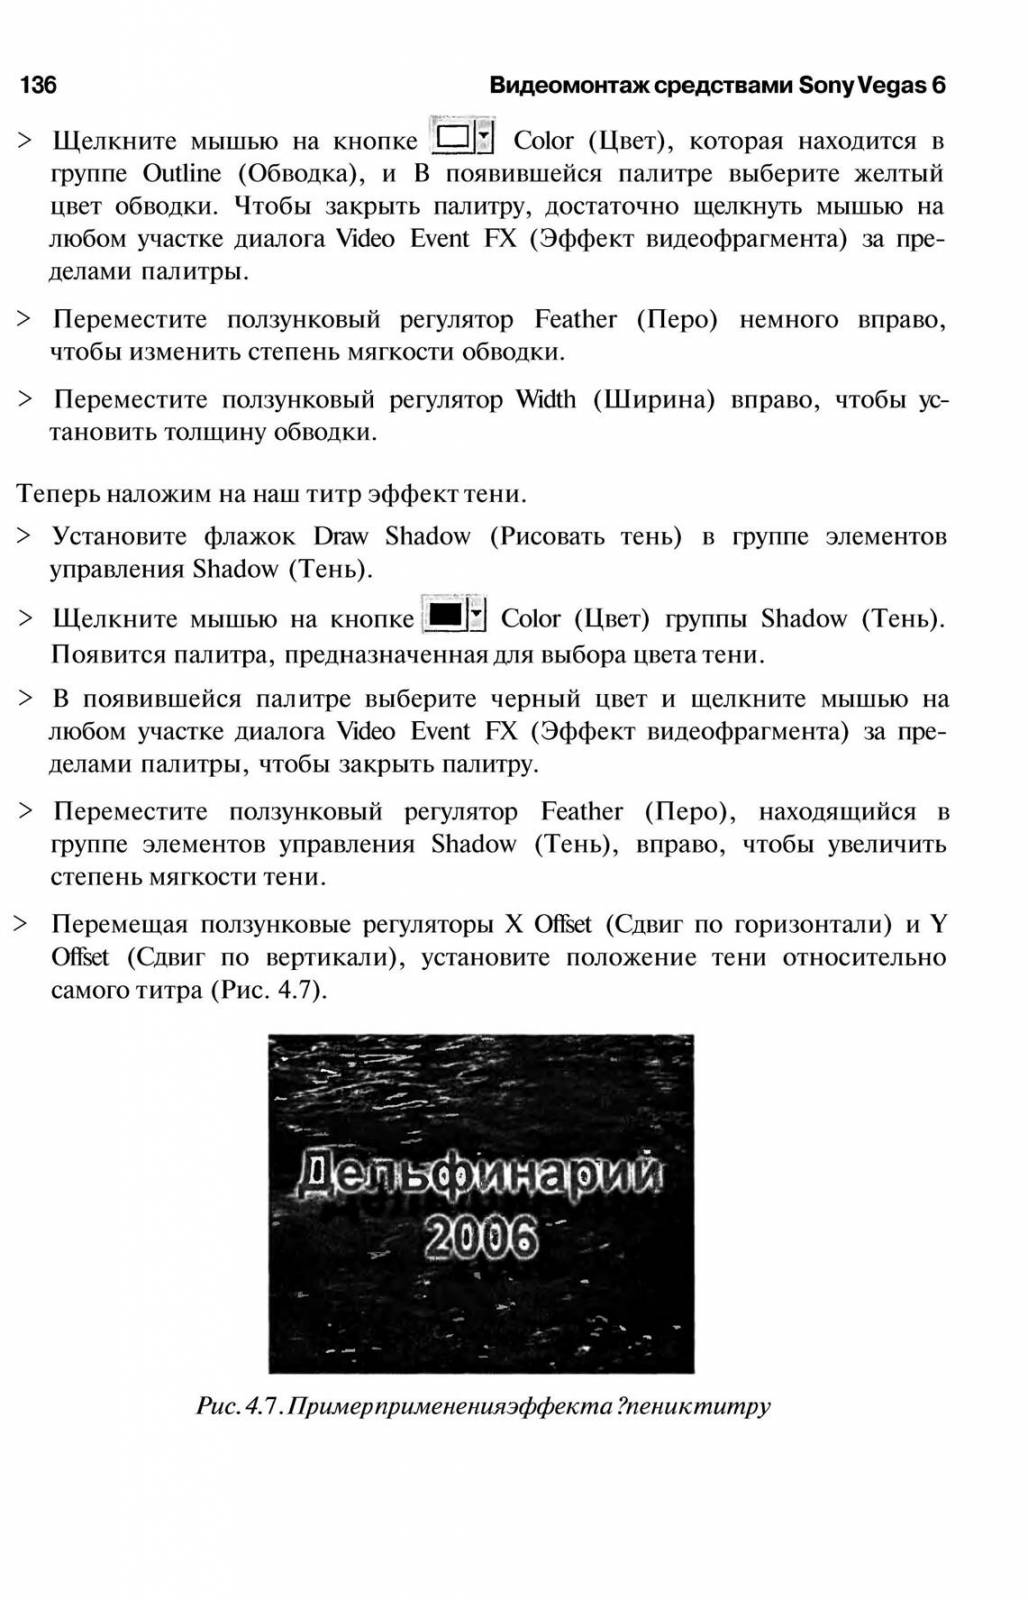 http://redaktori-uroki.3dn.ru/_ph/6/653295572.jpg